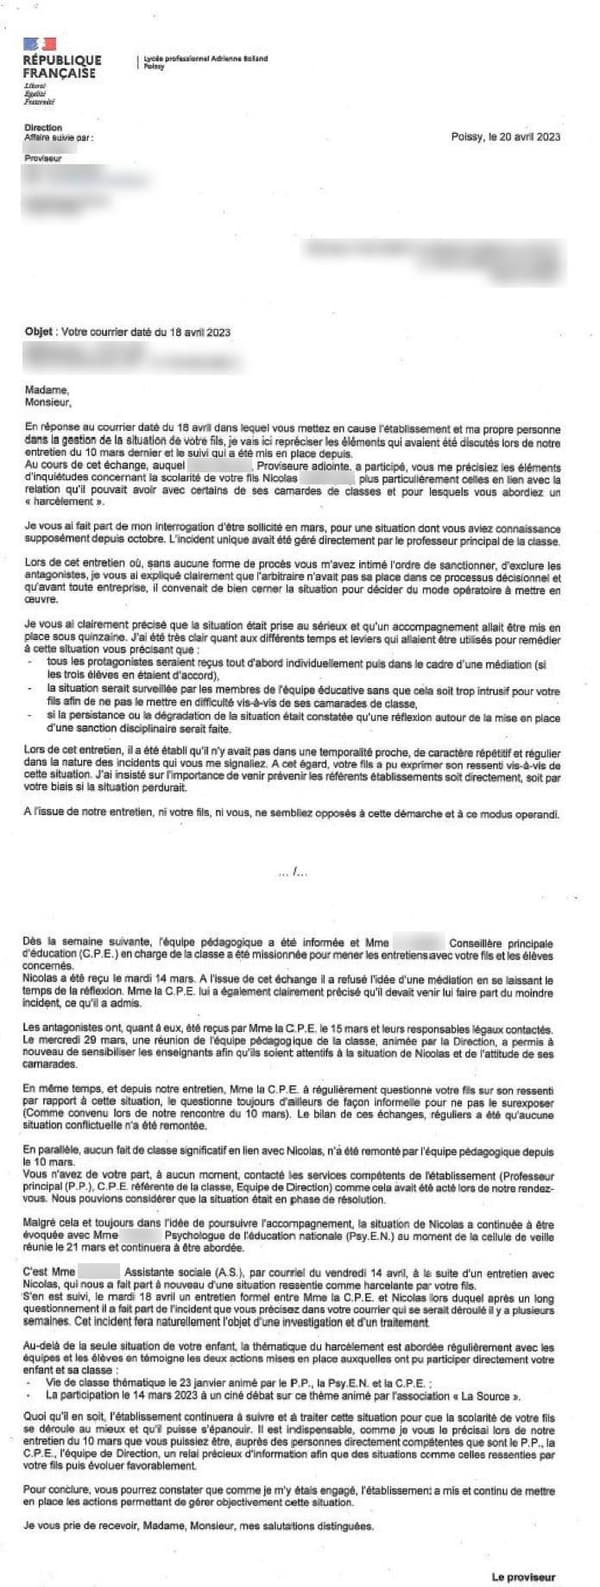 La lettre du proviseur, datée de mai 2023, aux parents de l'élève qui s'est suicidé à Poissy (Yvelines) début septembre 2023.